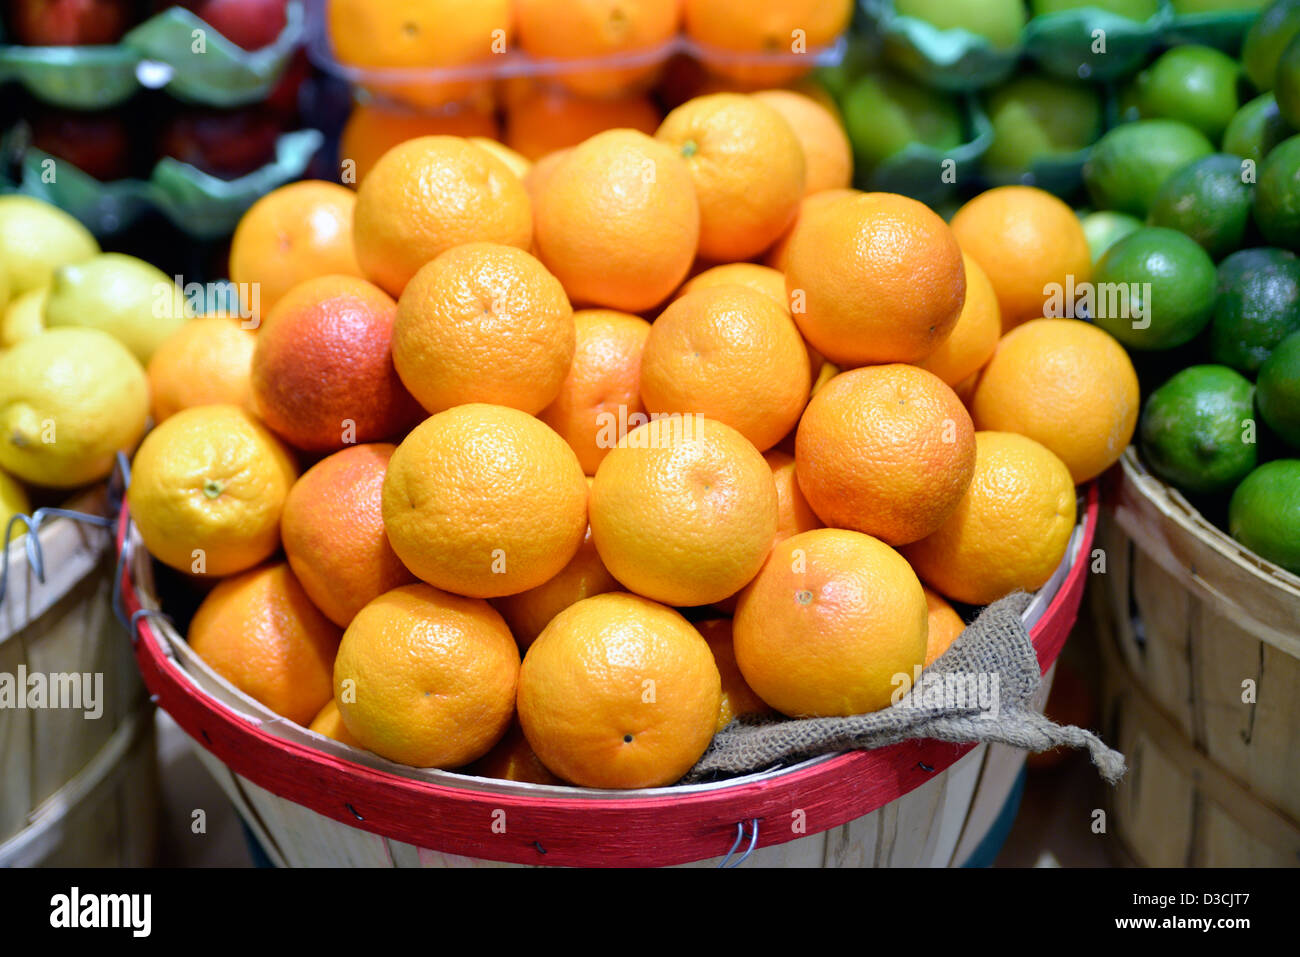 Boisseaux d'oranges, citrons et limes, affiché dans un marché de détail alimentaire gastronomique Banque D'Images